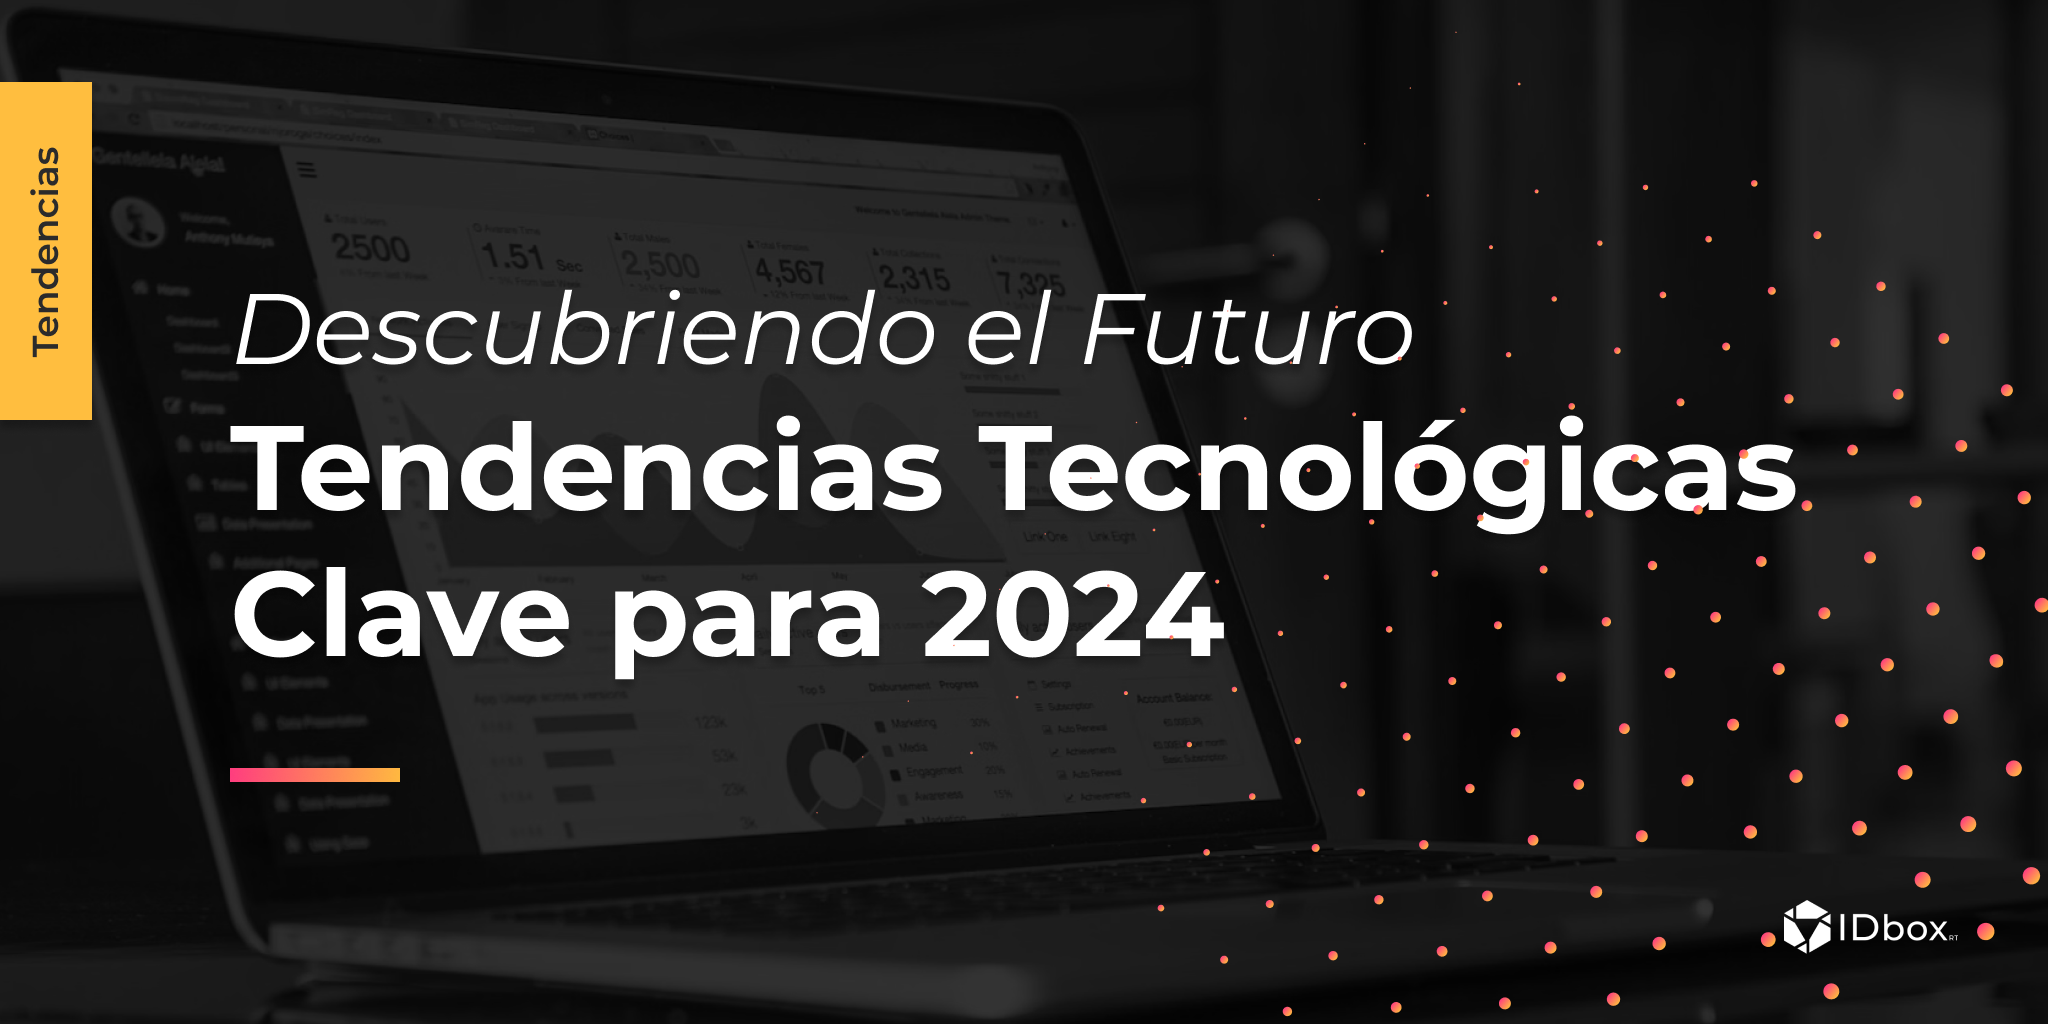 Desvelando el Futuro: Principales tendencias tecnológicas para 2024